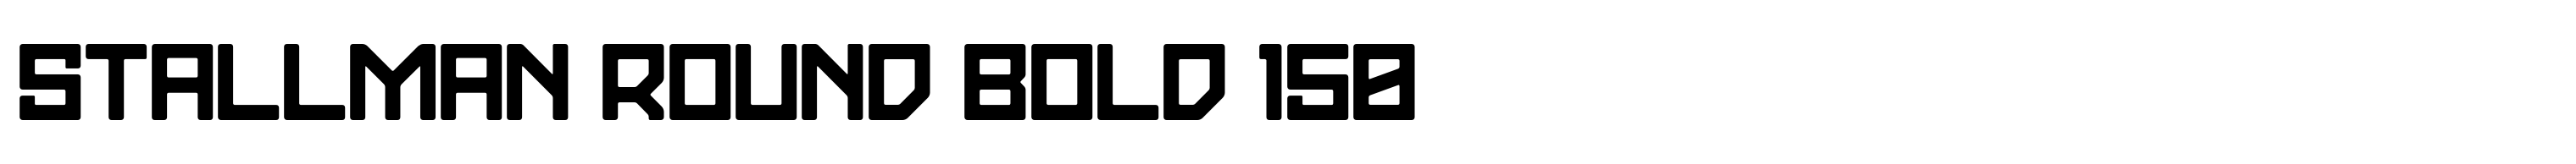 Stallman Round Bold 150